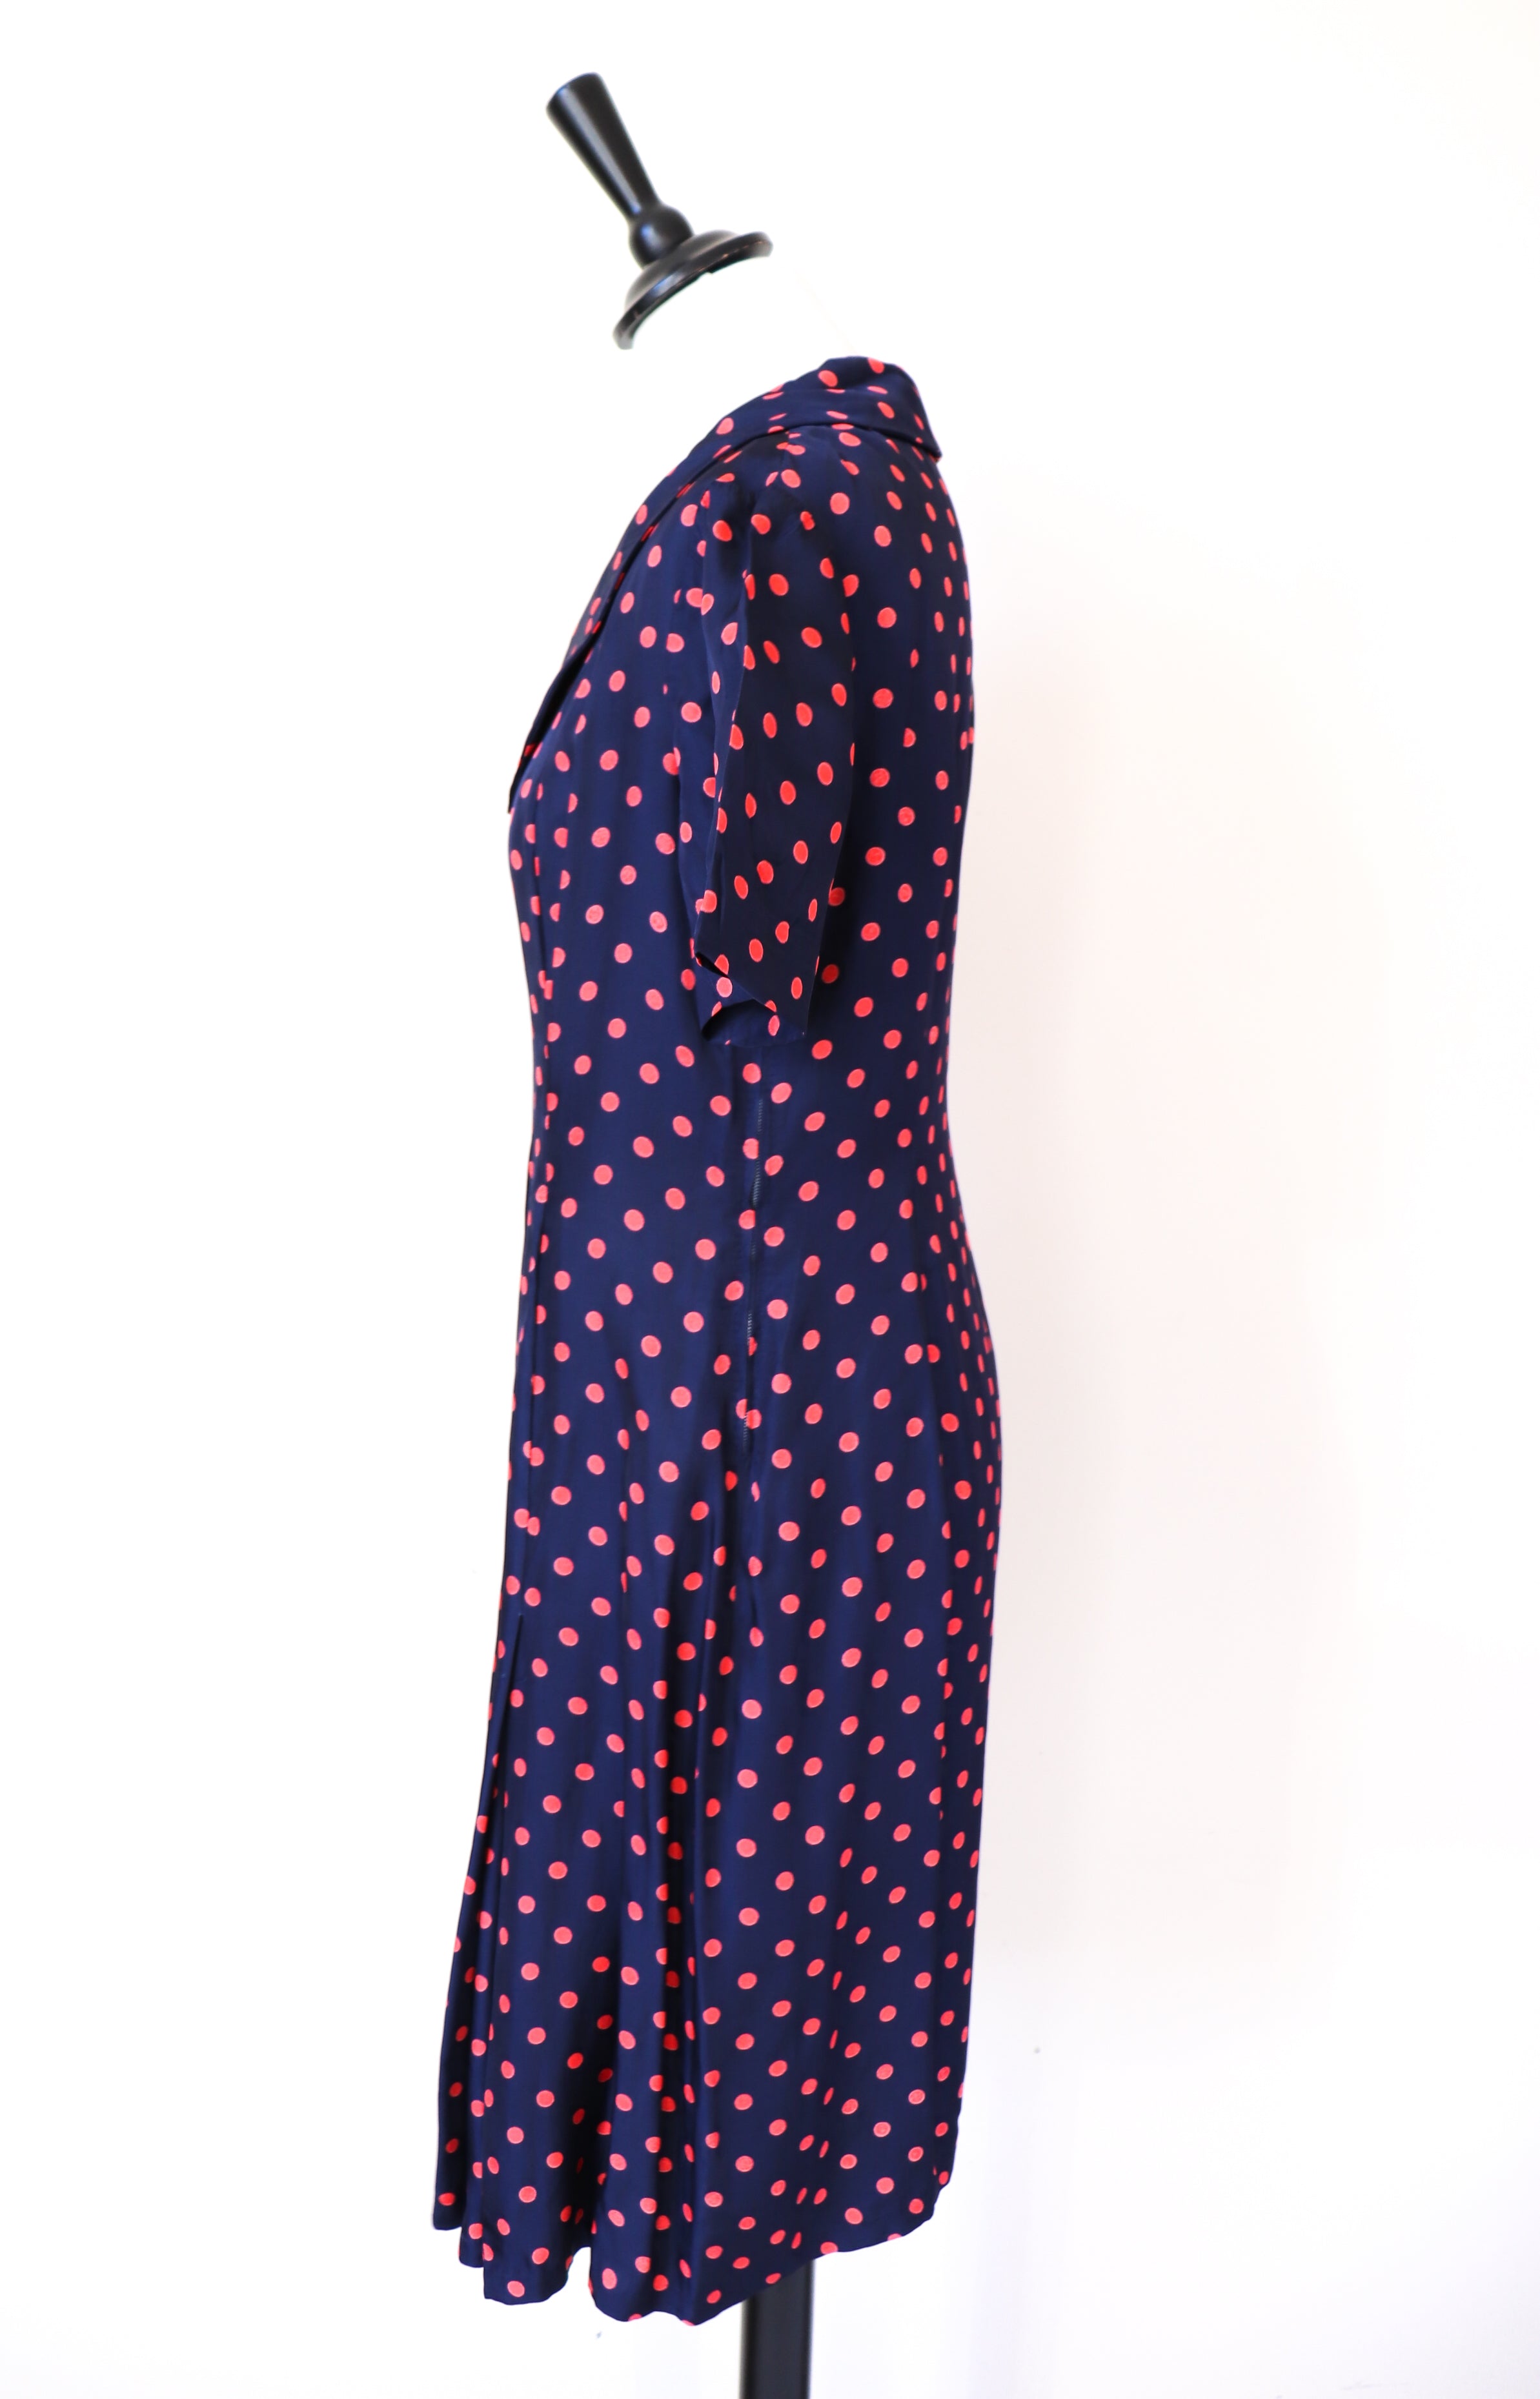 Vintage 1970s  Dress - Blue Red Polka Dot / Spotted - S / UK 10